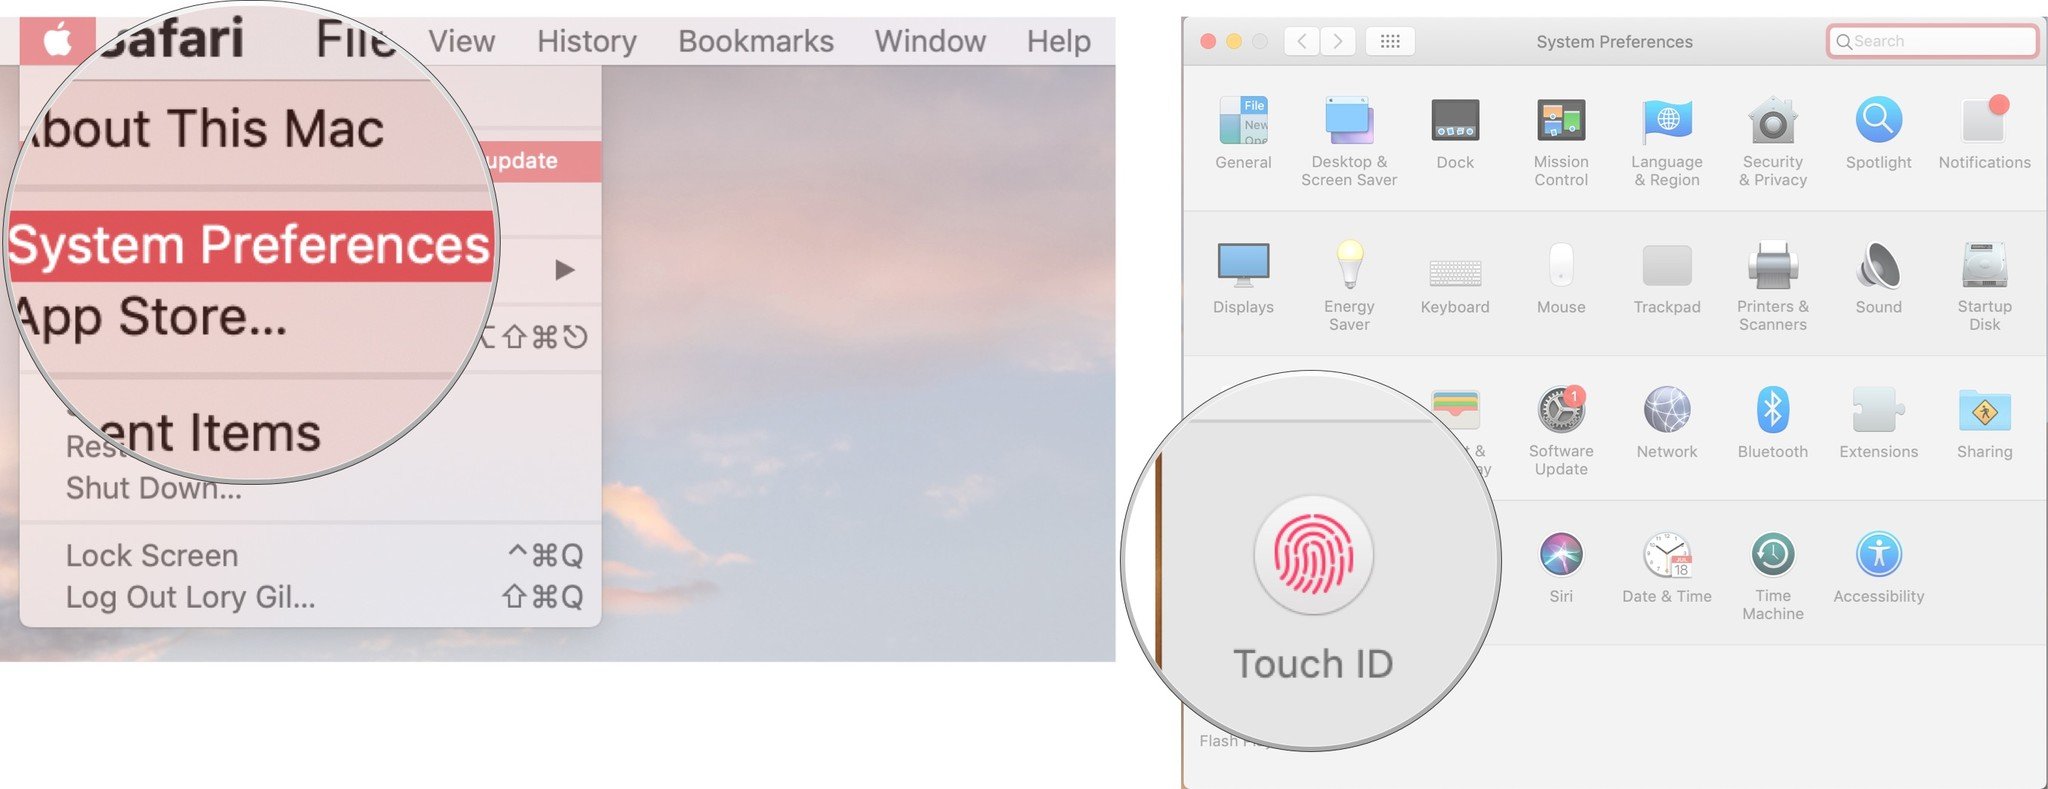 Ouvrez les Préférences Système, puis cliquez sur Touch ID.